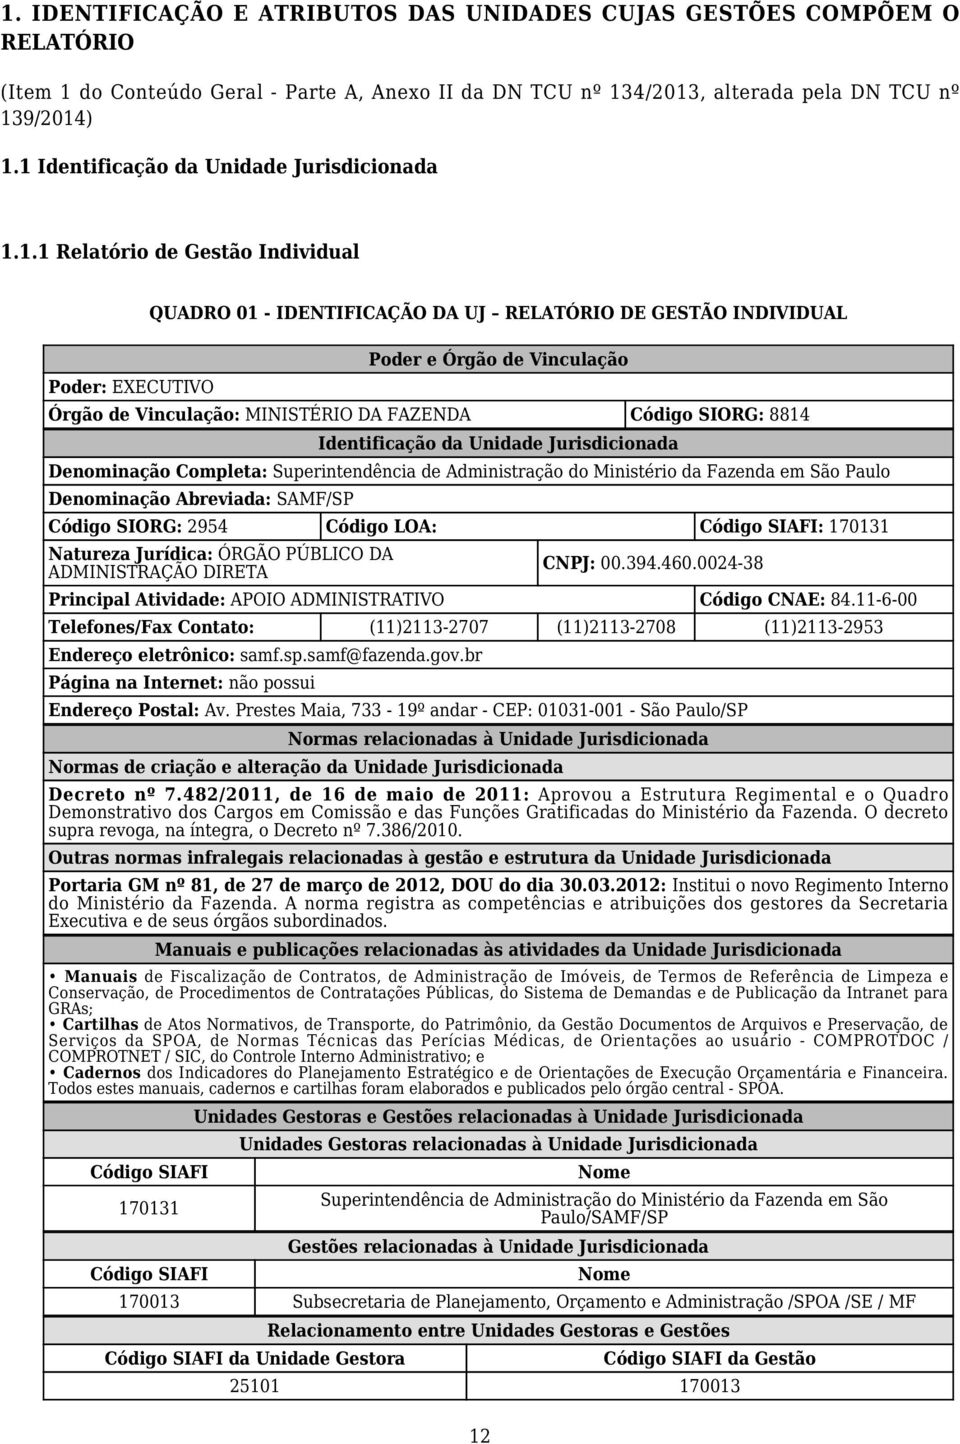 Vinculação: MINISTÉRIO DA FAZENDA Código SIORG: 8814 Identificação da Unidade Jurisdicionada Denominação Completa: Superintendência de Administração do Ministério da Fazenda em São Paulo Denominação